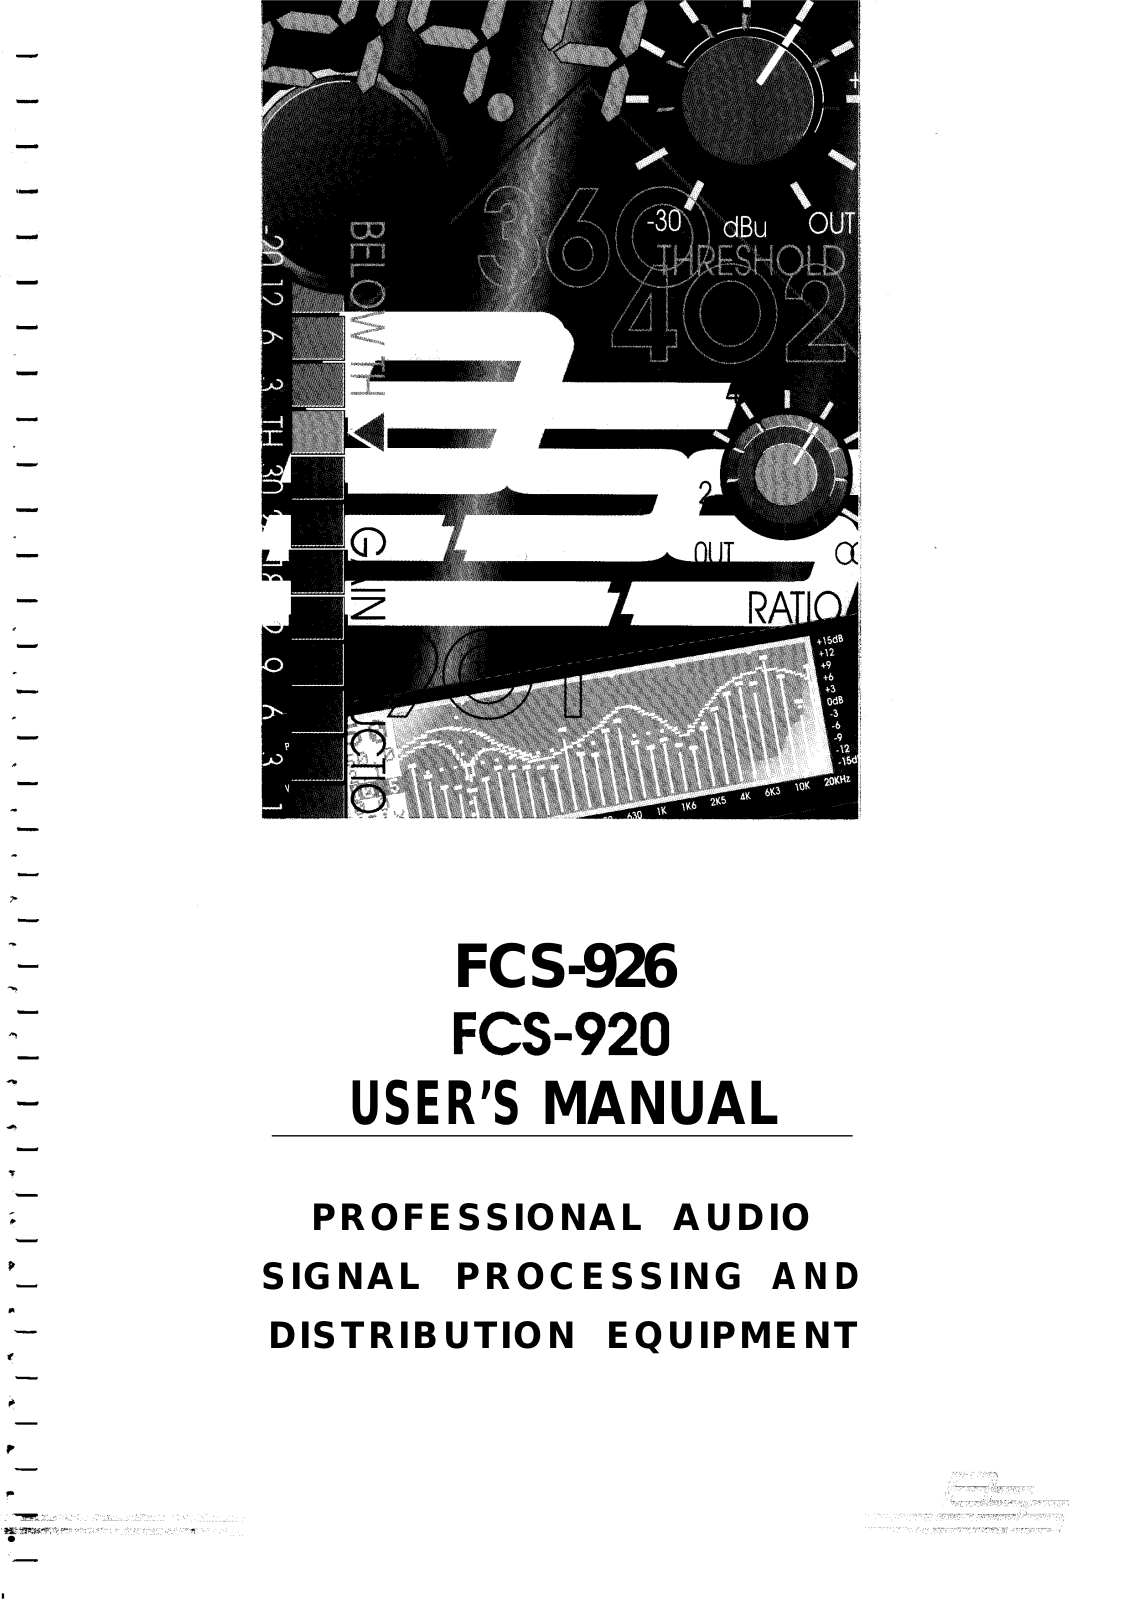 Bss audio FCS-926 User Manual